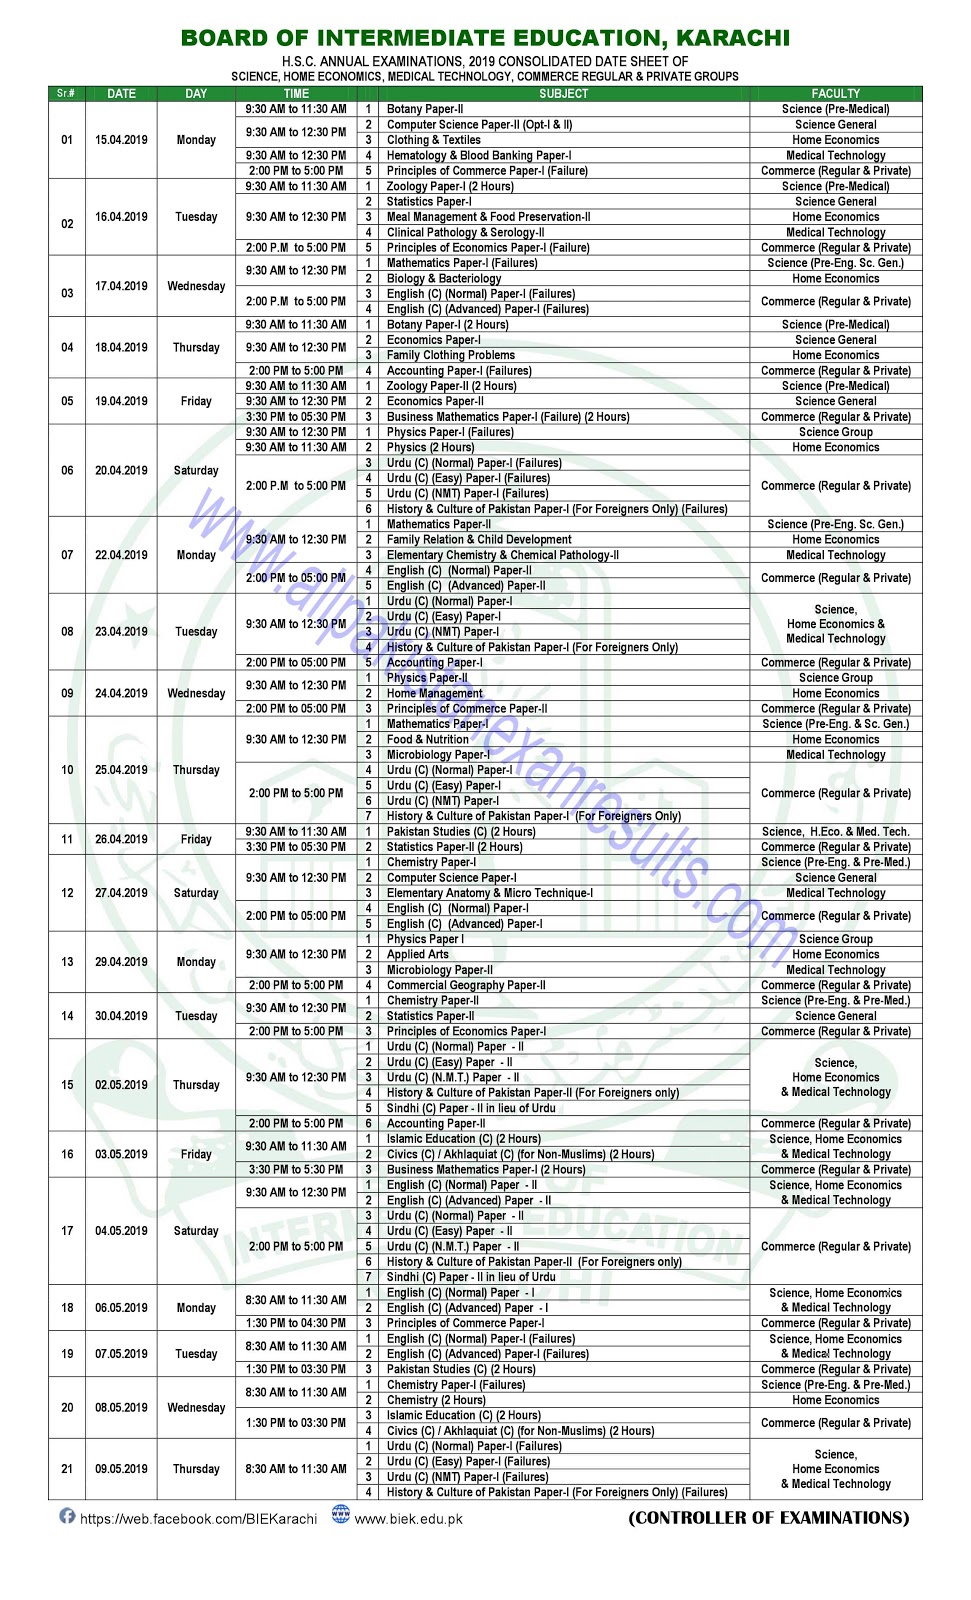 BISE Karachi Inter Date Sheet 2019